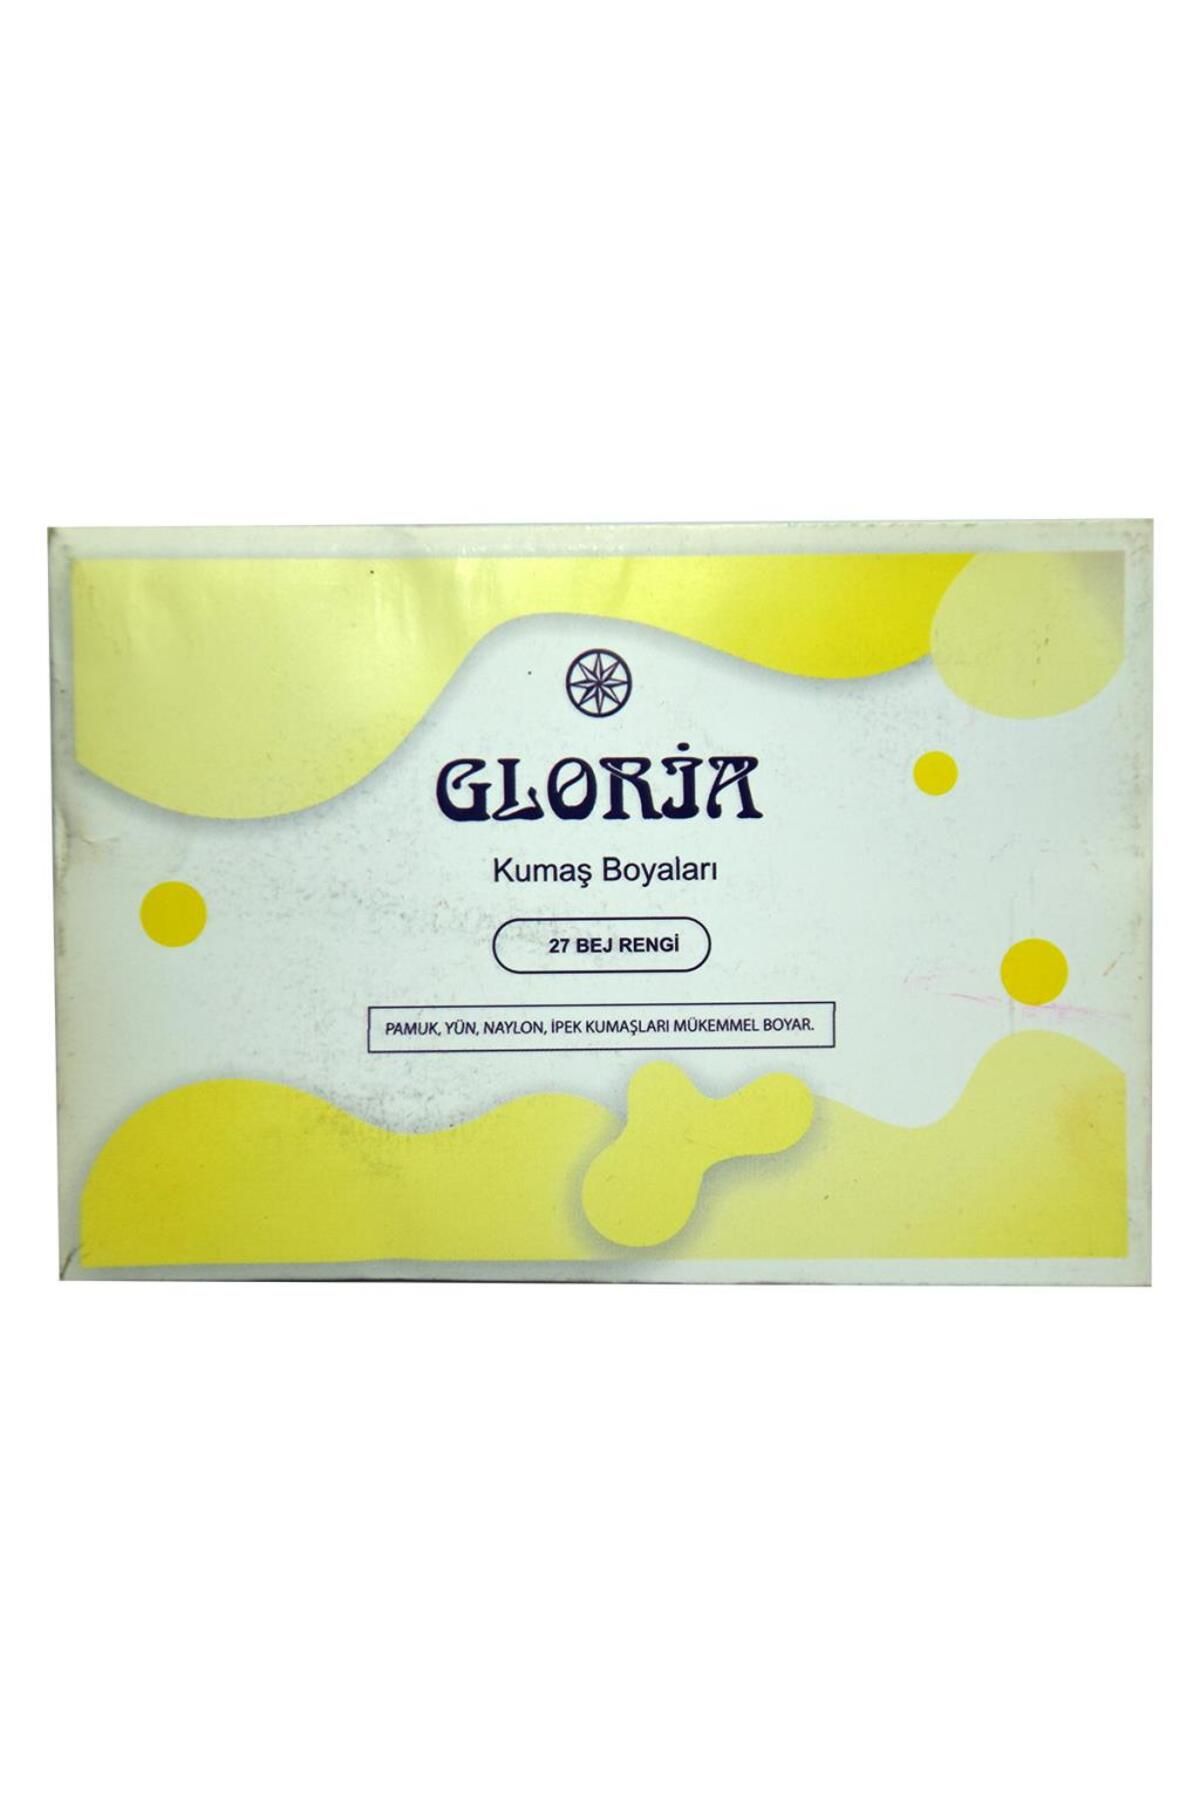 Gloria 27 Bej Rengi Pamuk Yün Naylon I?pek Kumaş Boyası 10g Paket